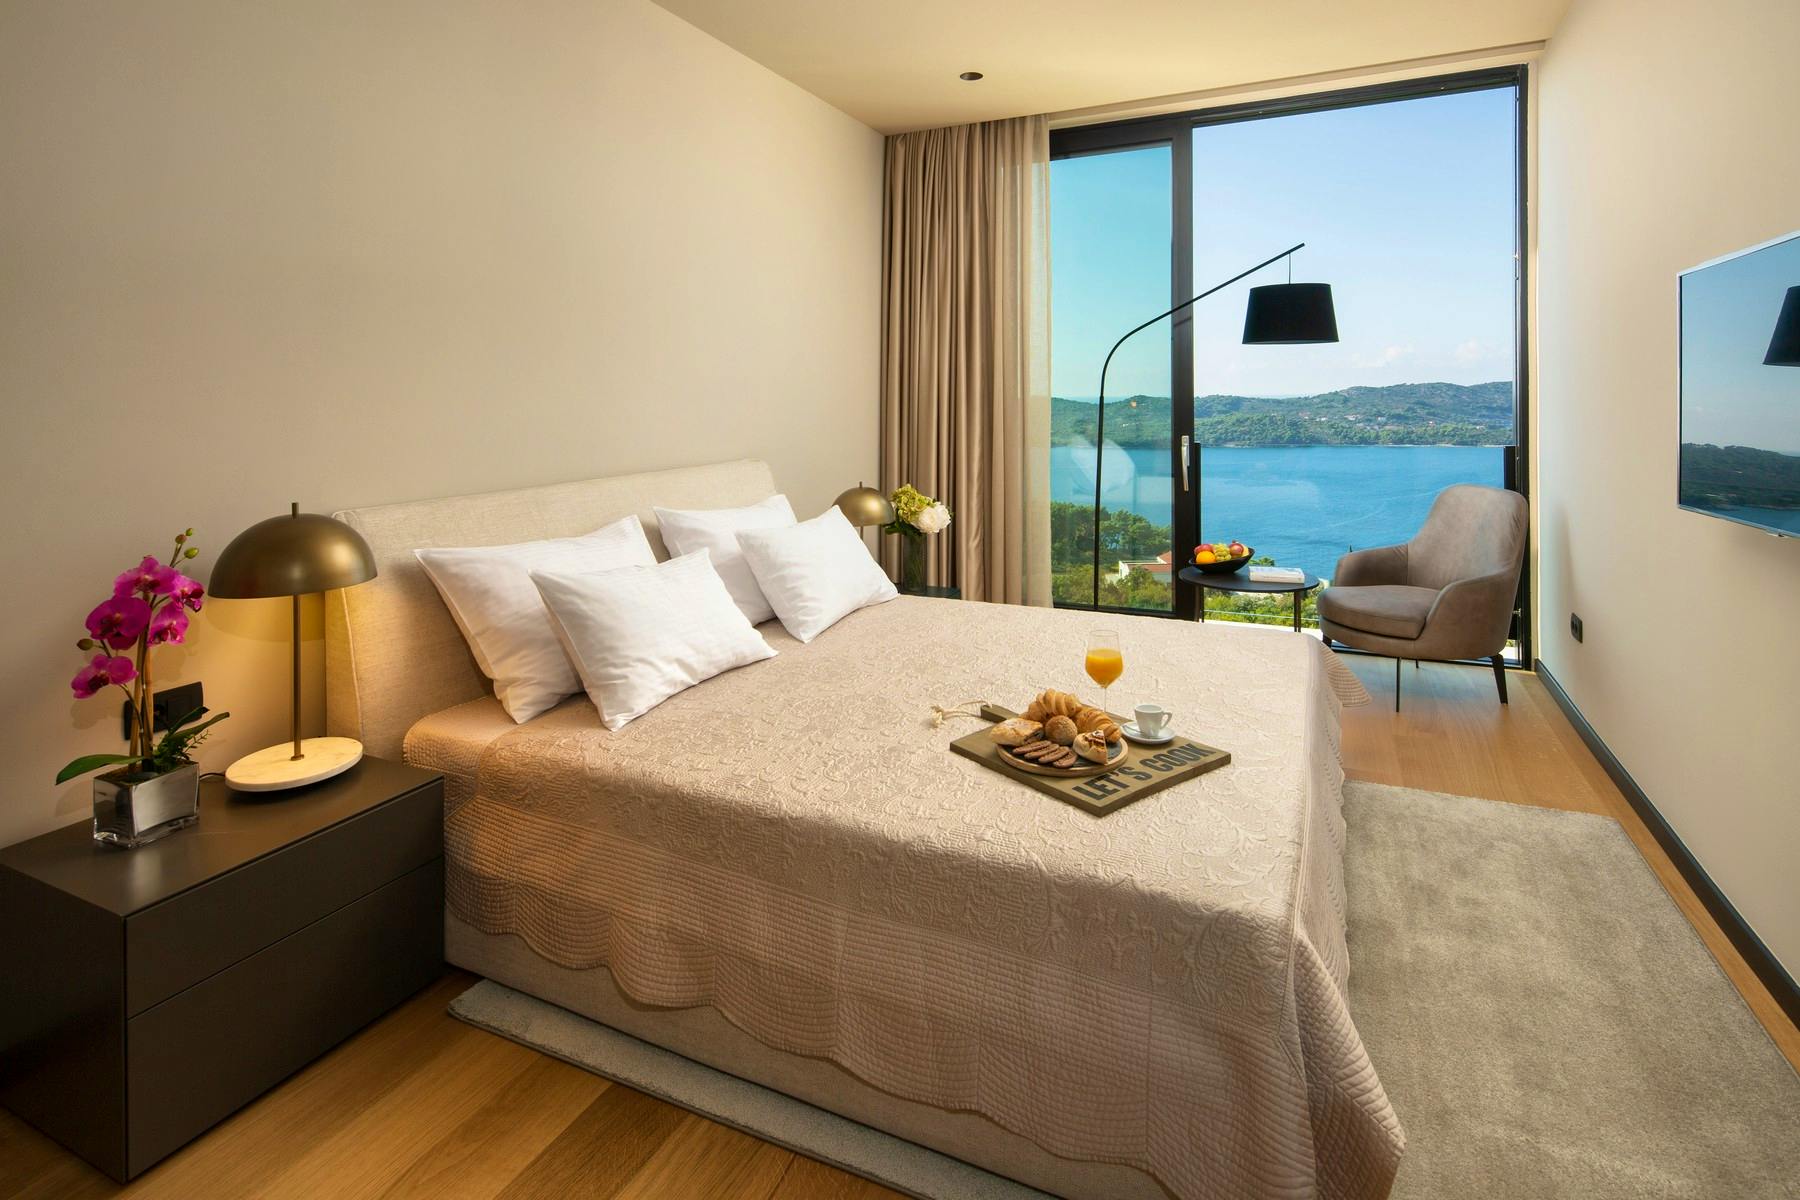 Elegant bedroom overlooking the Adriatic sea